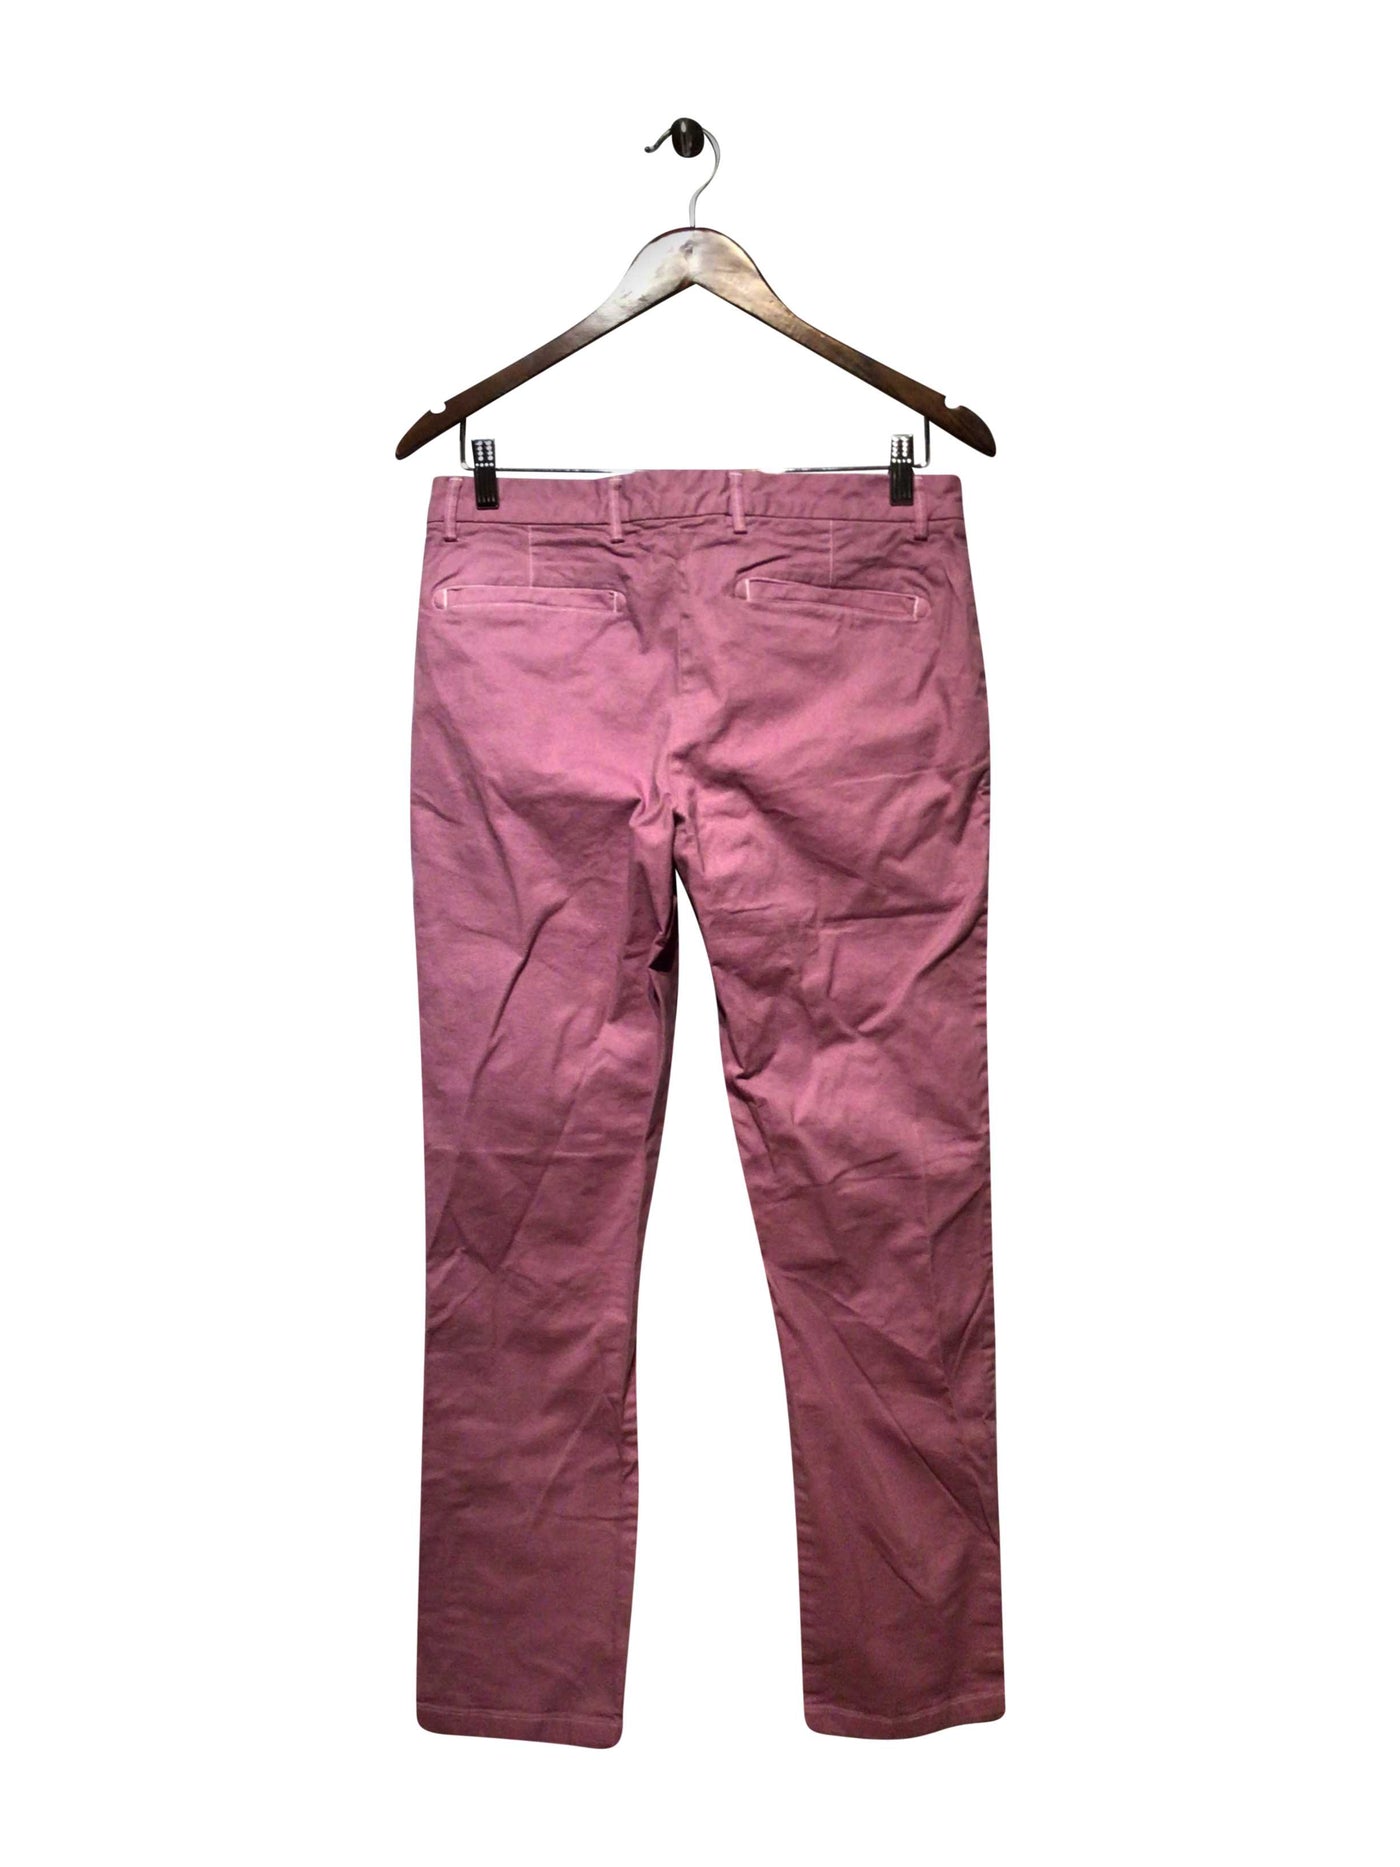 BLACK BROWN 1826 Regular fit Pant in Purple  -  30x30  21.00 Koop